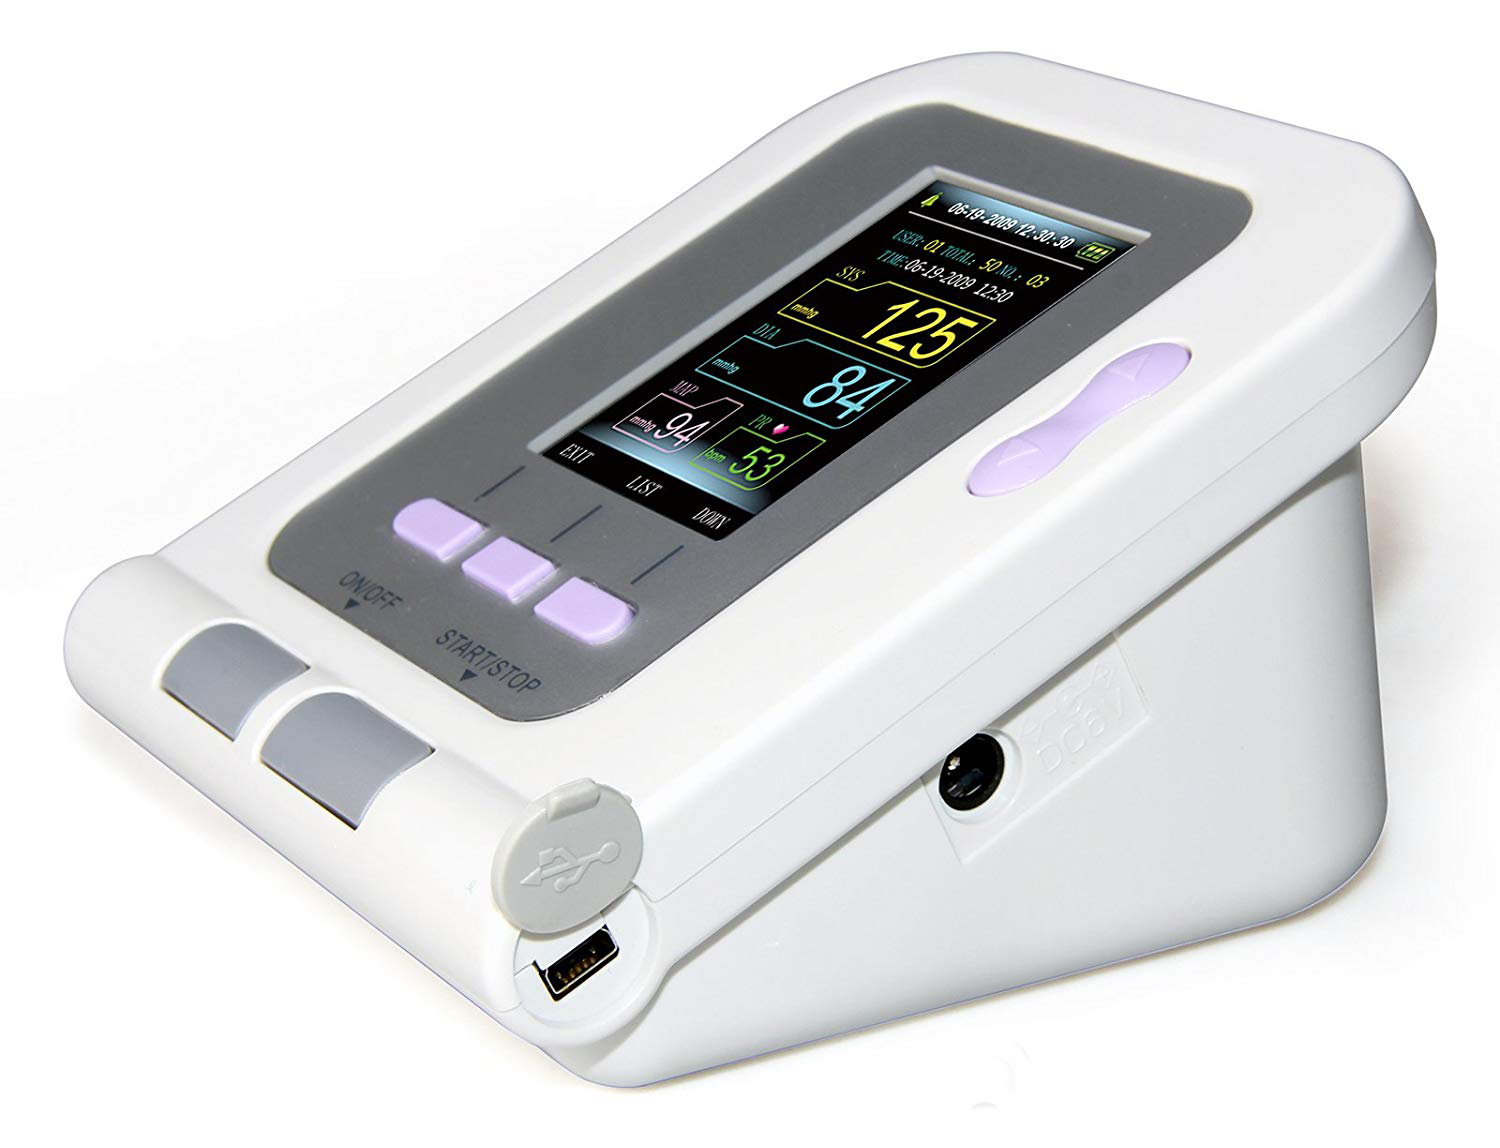 公式の アネロイド血圧計II AR-410 グレー アダルト 24-8905-00 松吉医療総合カタログ マツヨシ tencarat-plume.jp